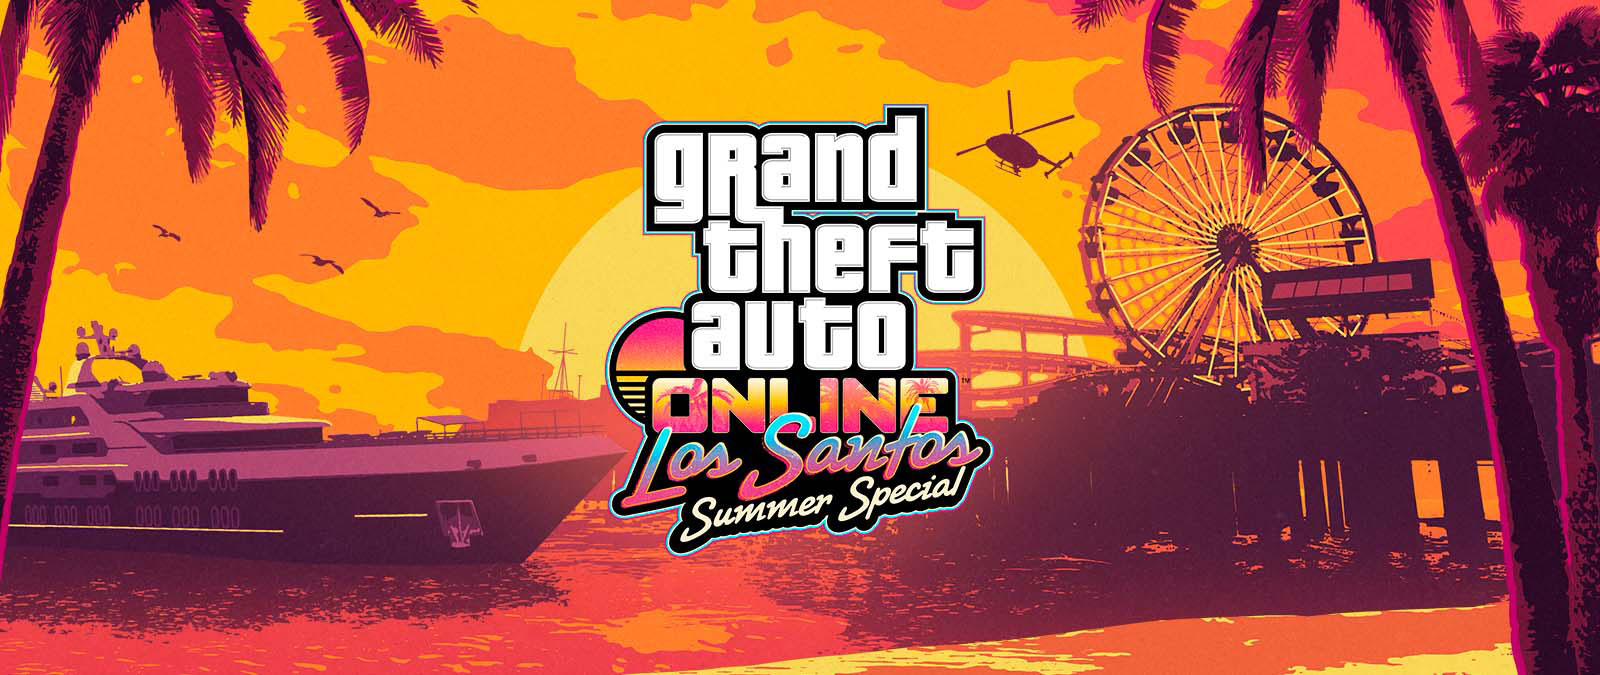 Grand Theft Auto Online. Los Santos Summer Special. En yacht, et pariserhjul og et helikopter i solnedgangen